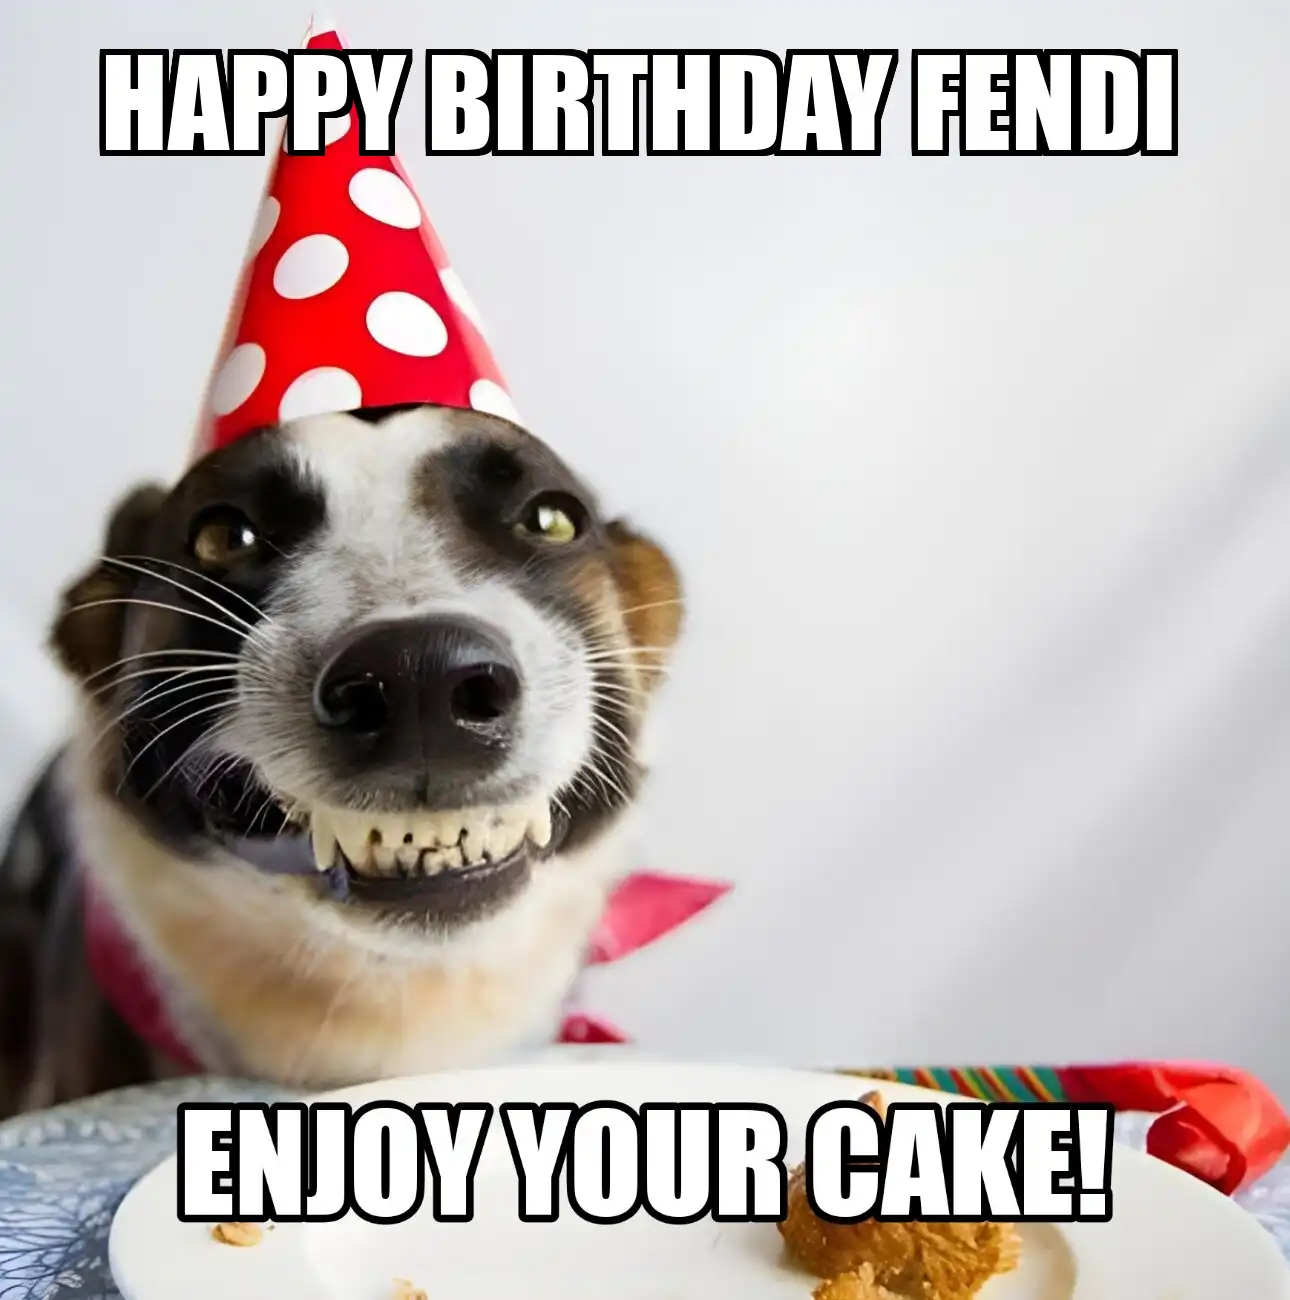 Happy Birthday Fendi Enjoy Your Cake Dog Meme